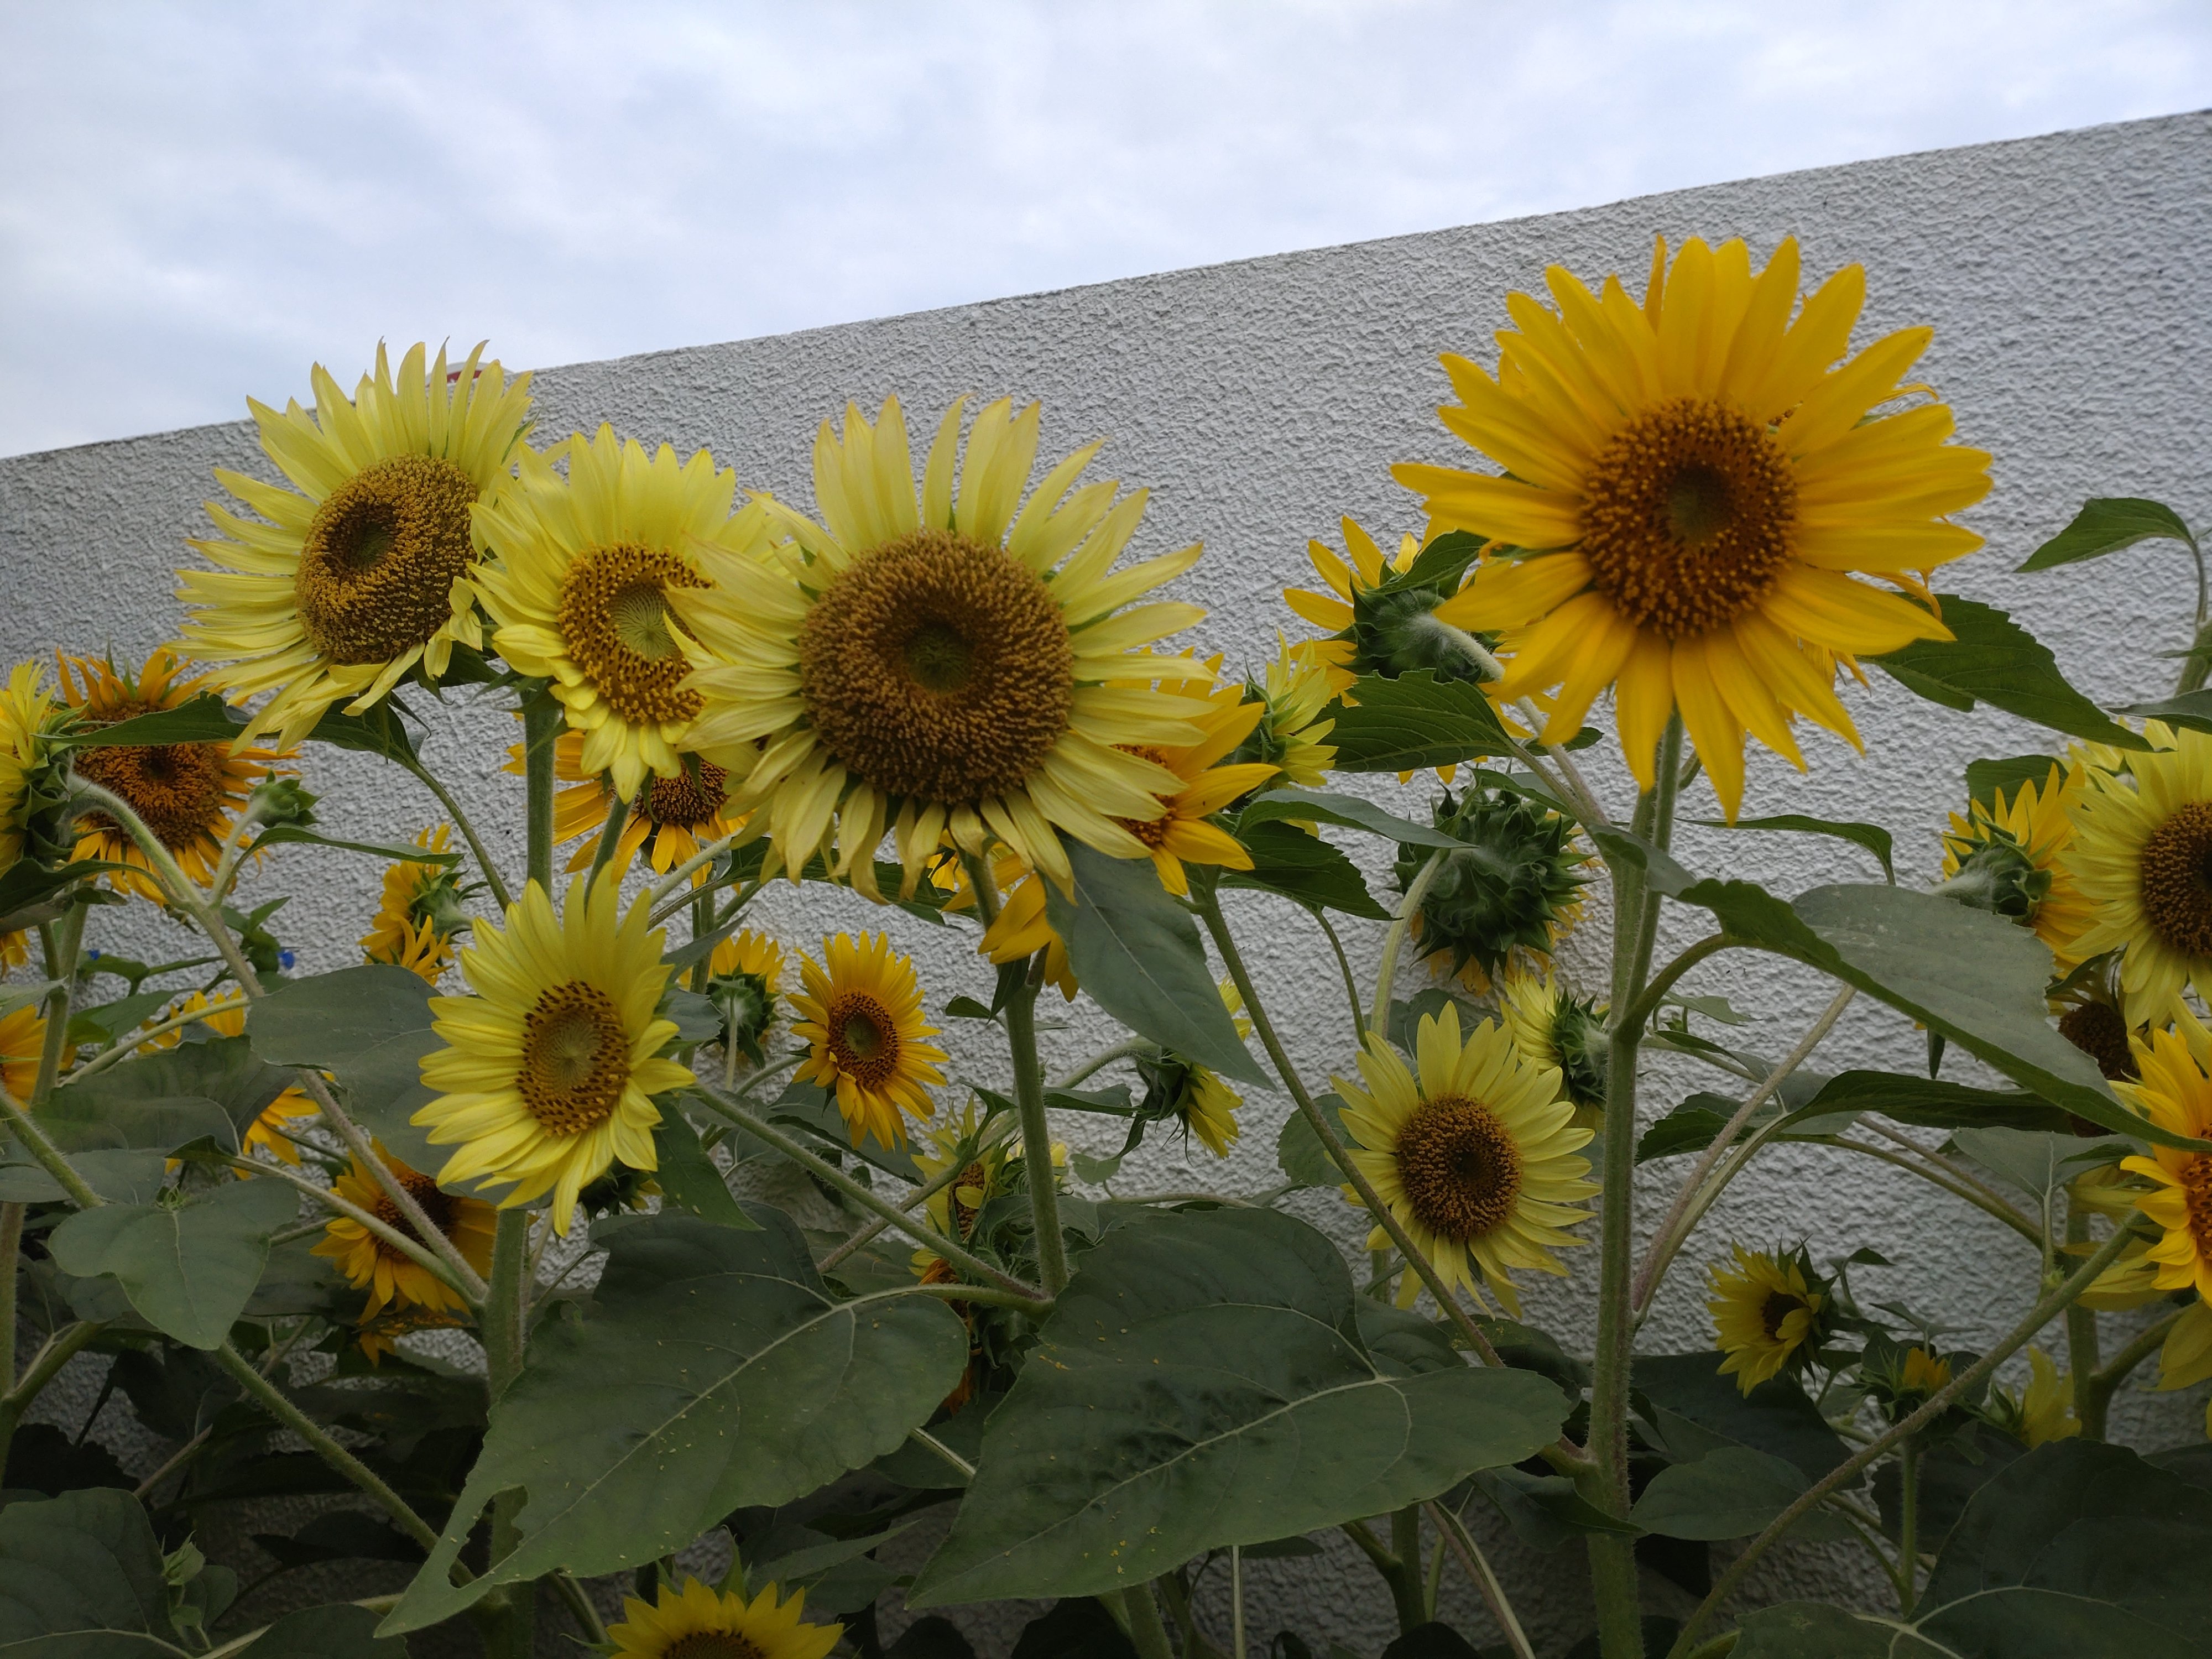 Sunflower.JPG